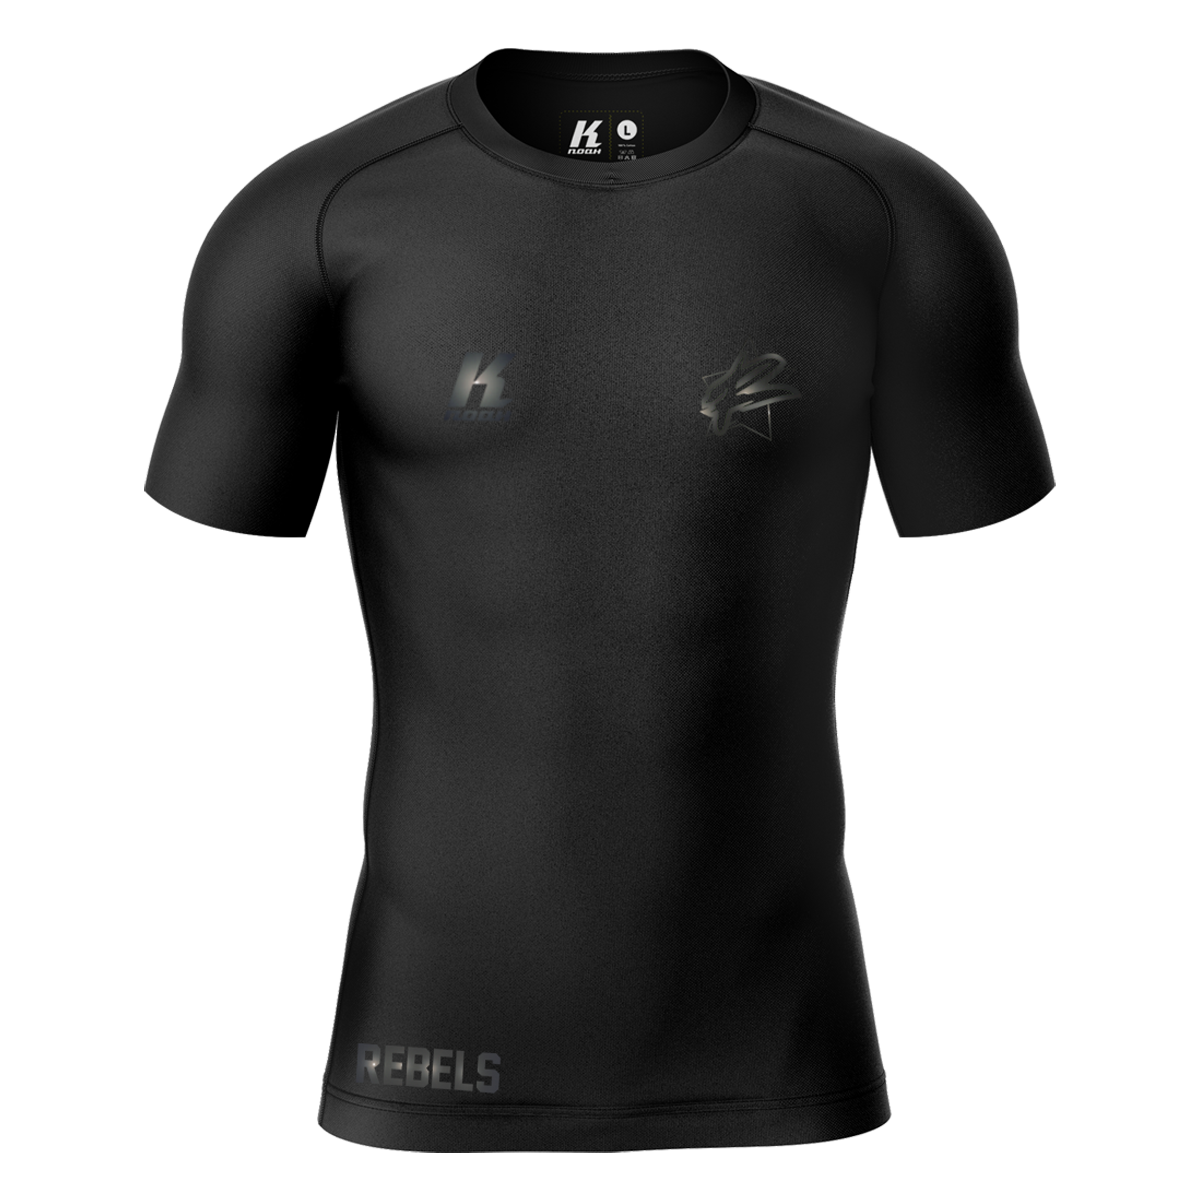 Rebels "Blackline" K.Tech Compression Shortsleeve Shirt